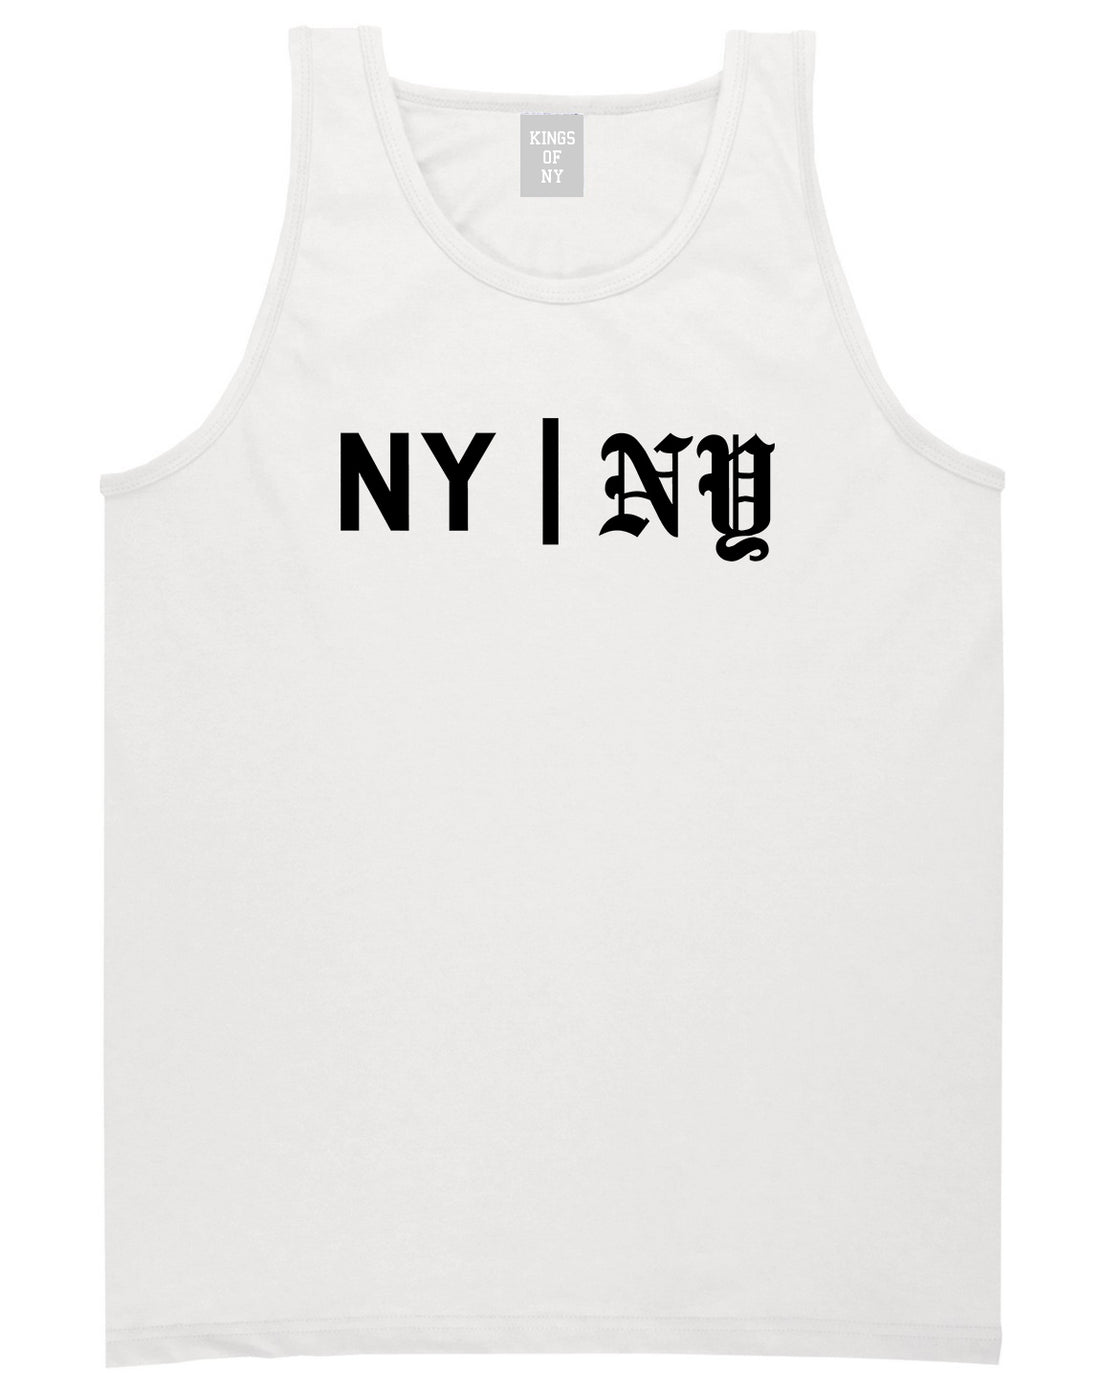 NY vs NY Mens Tank Top Shirt White